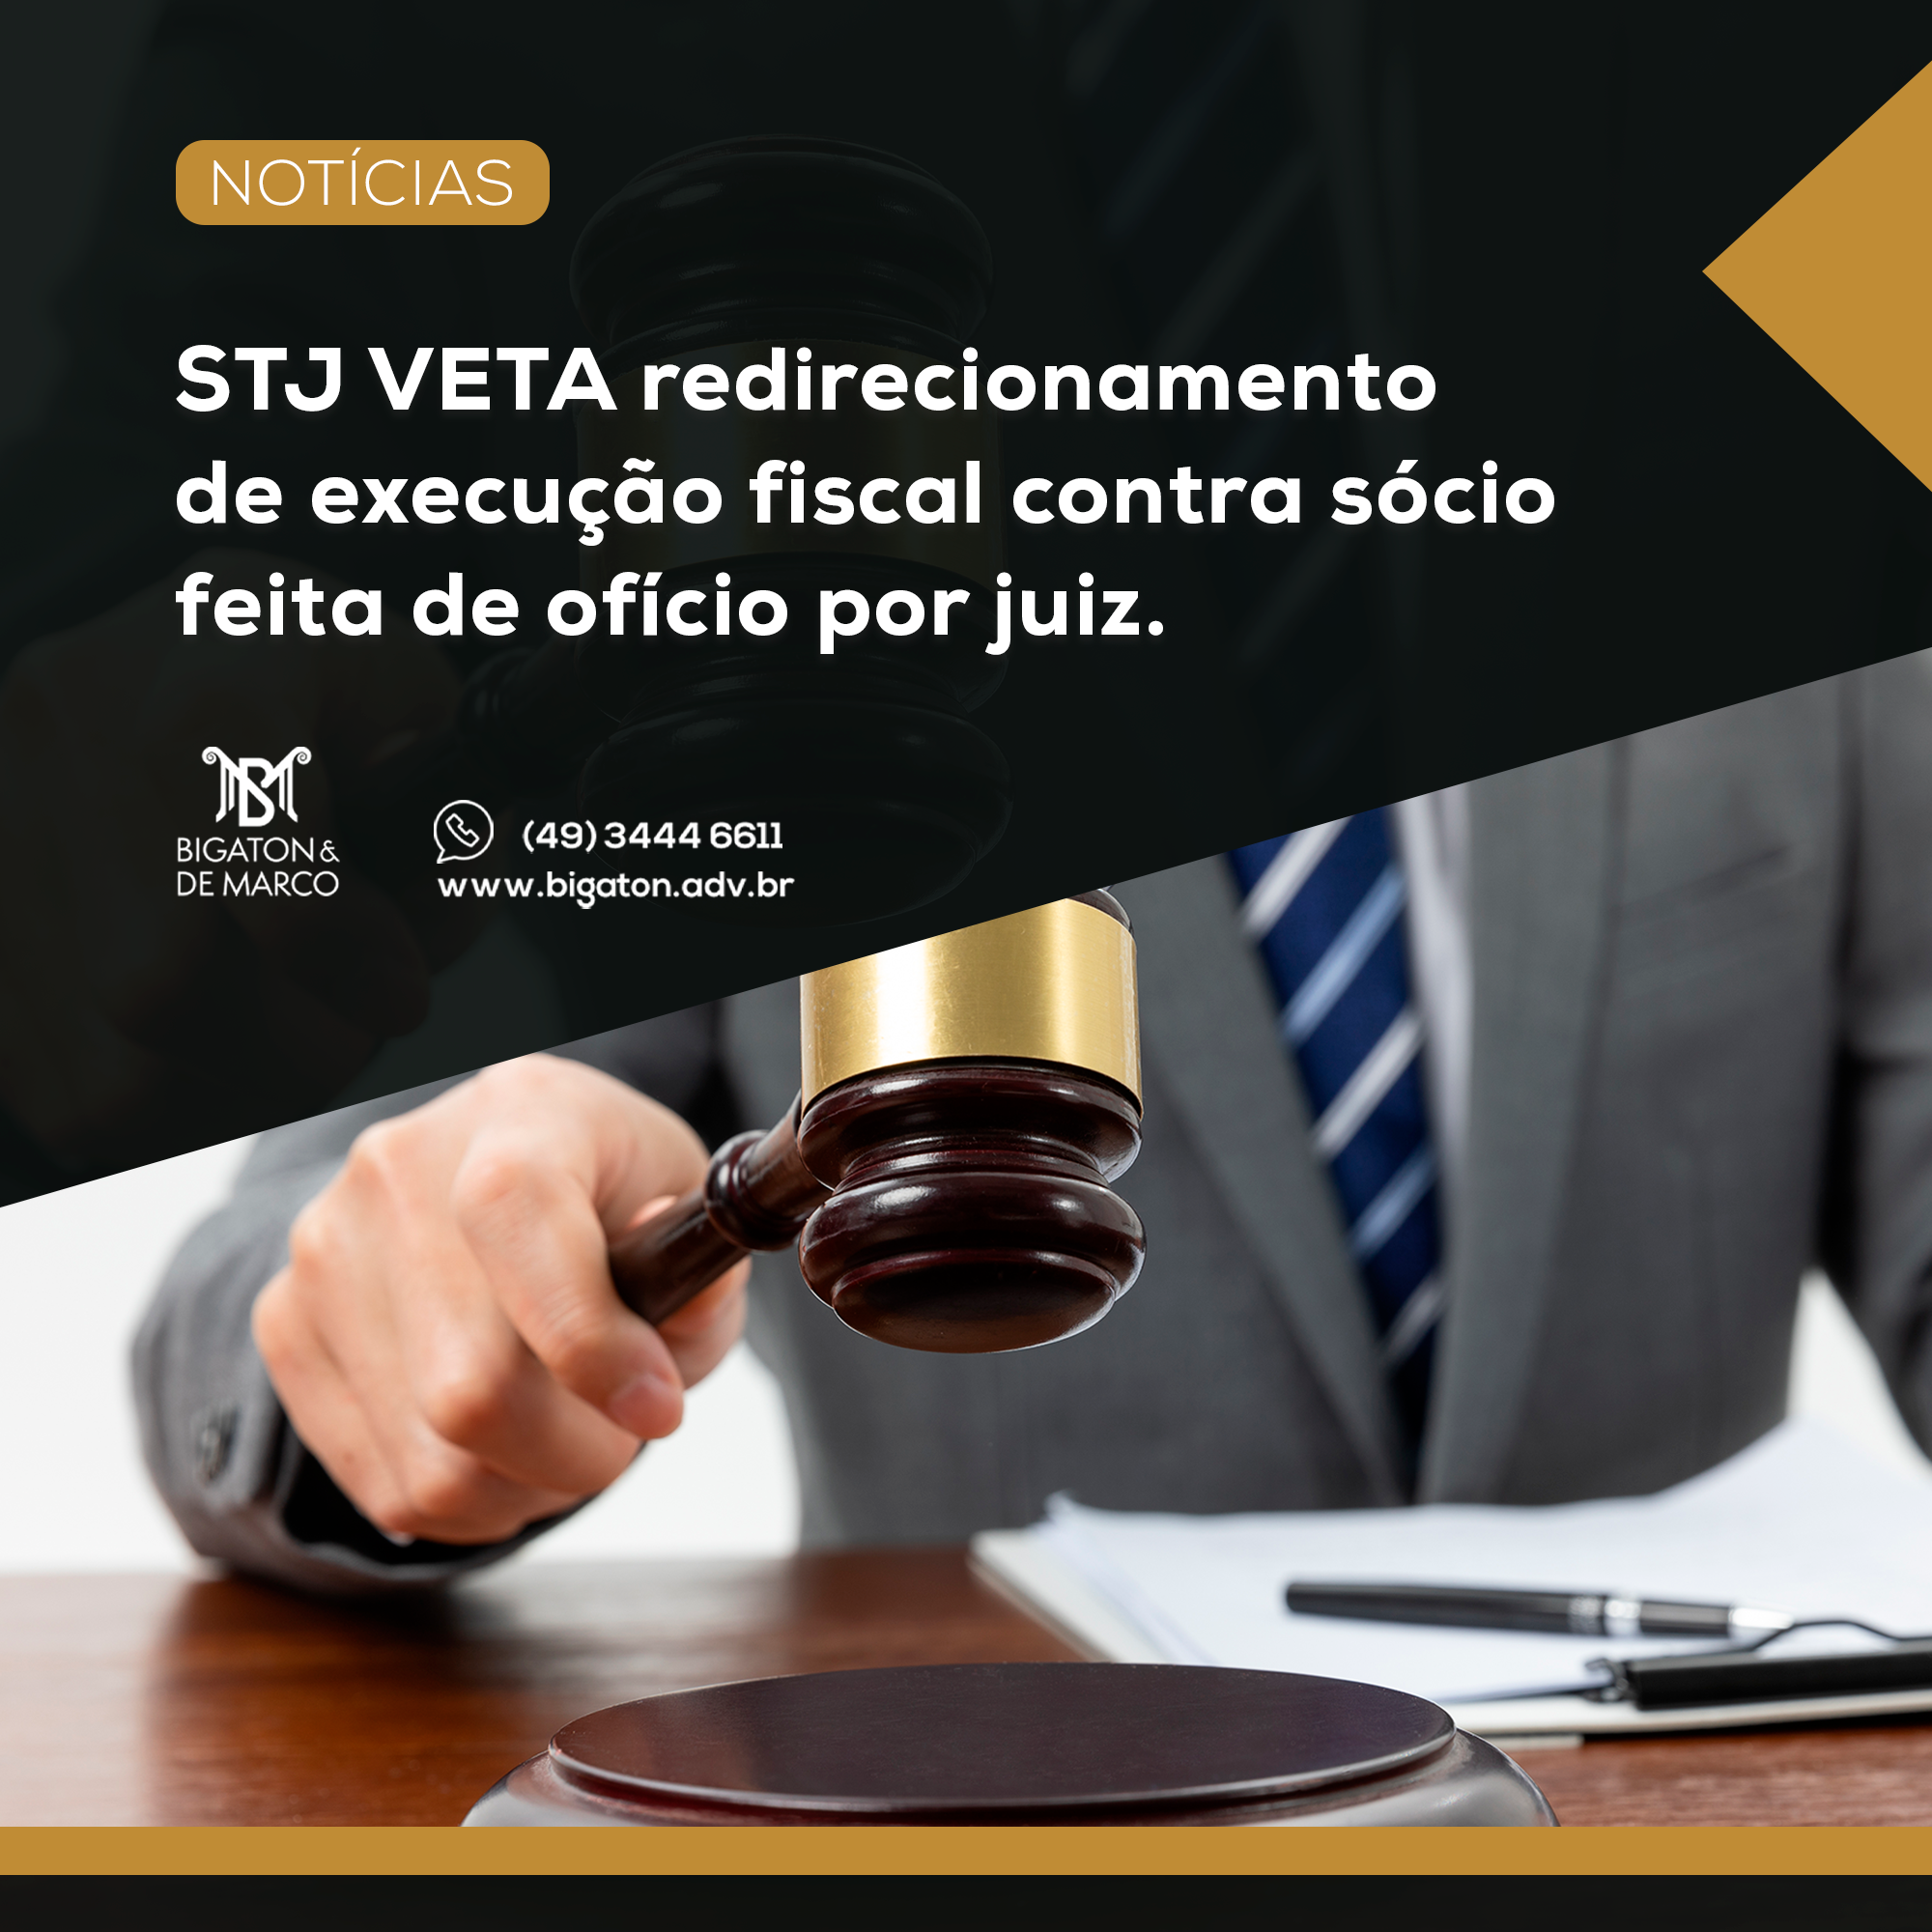 STJ veta redirecionamento de execução fiscal contra sócio feita de ofício por juiz